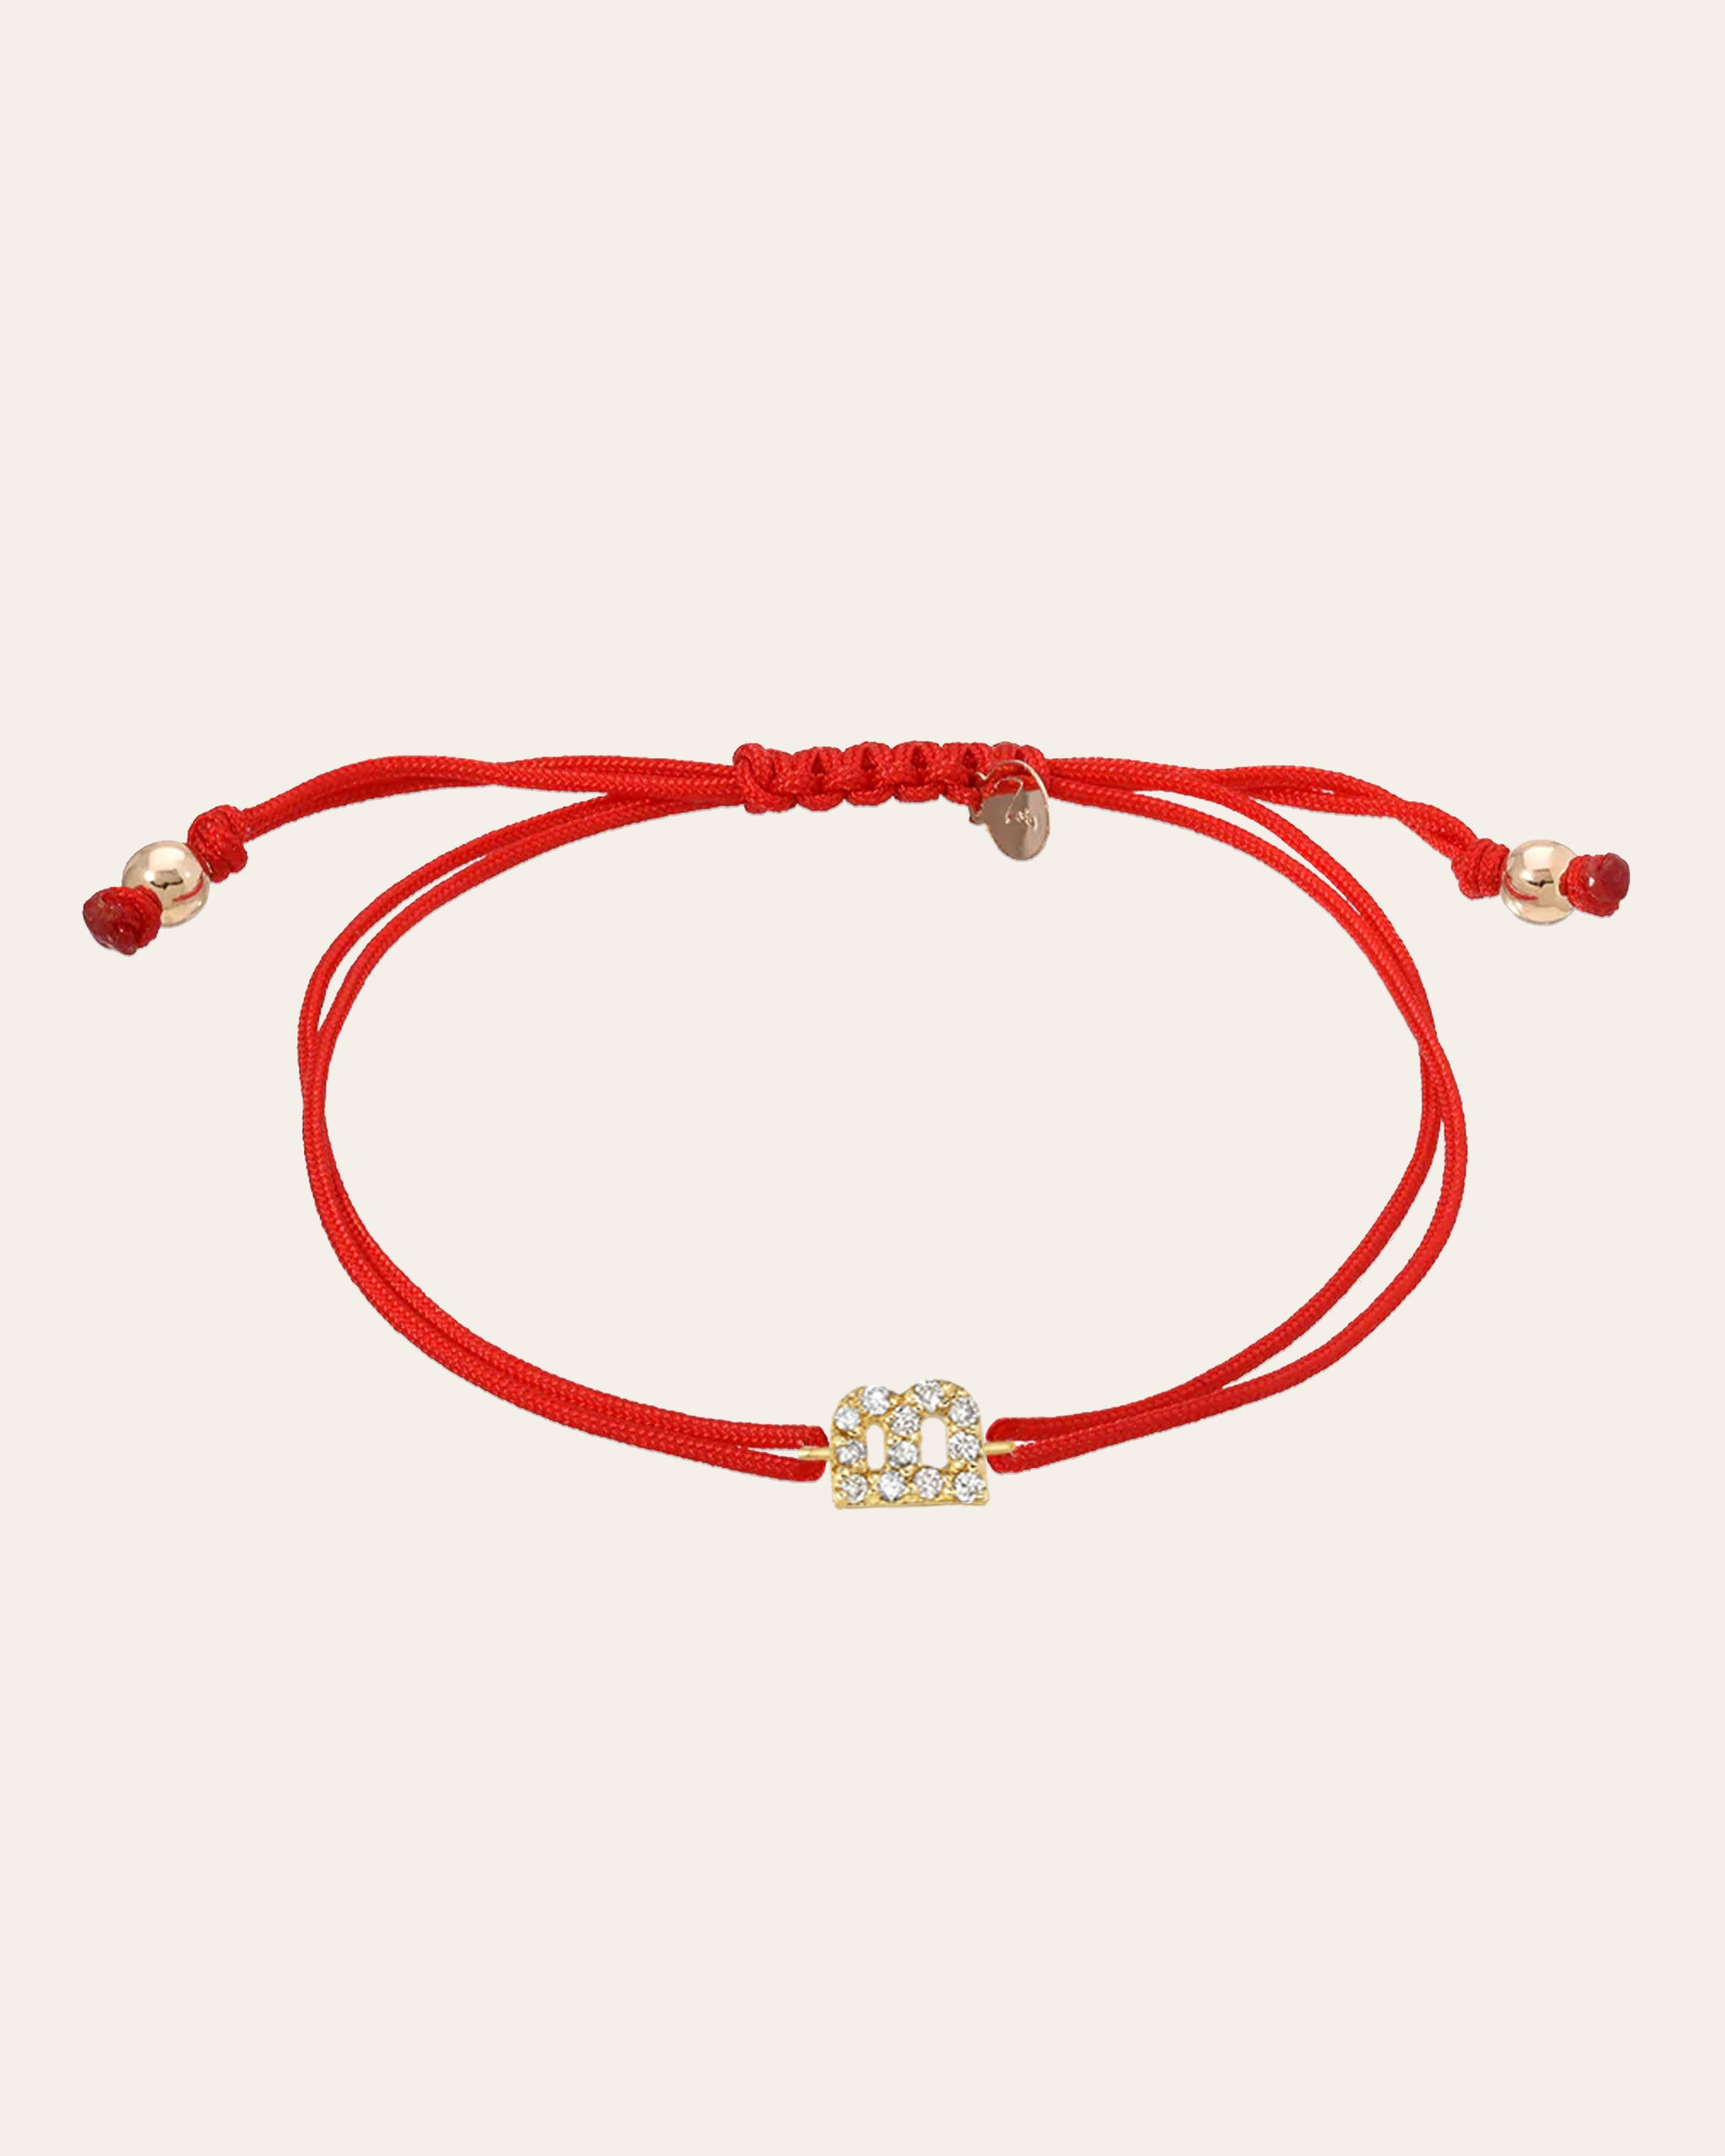 14k Gold and Diamond Charm Bracelet - Zoe Lev Jewelry